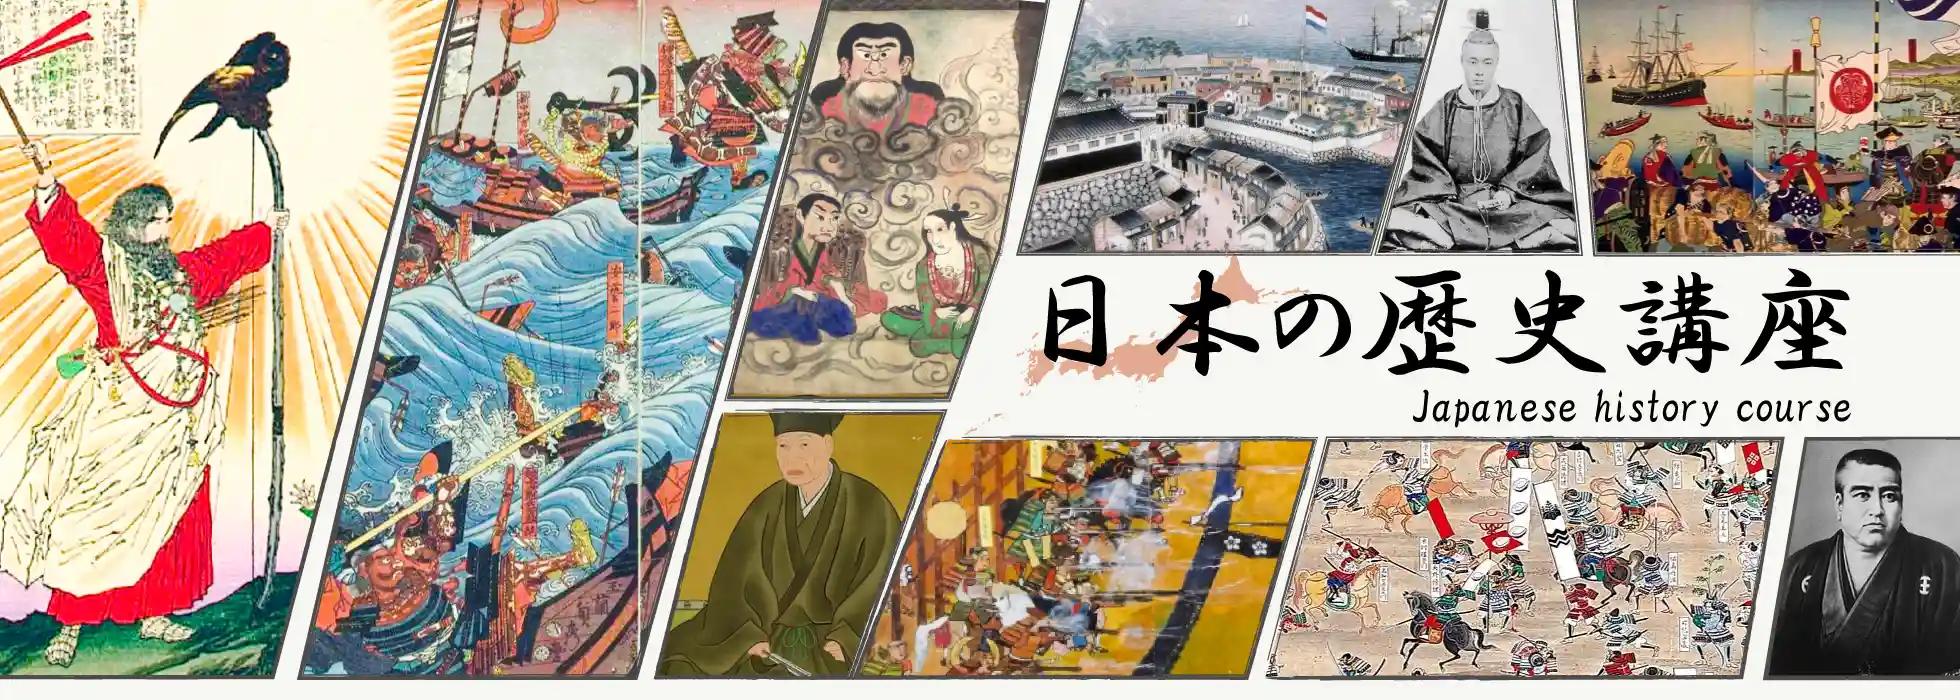 オンライン日本史コース